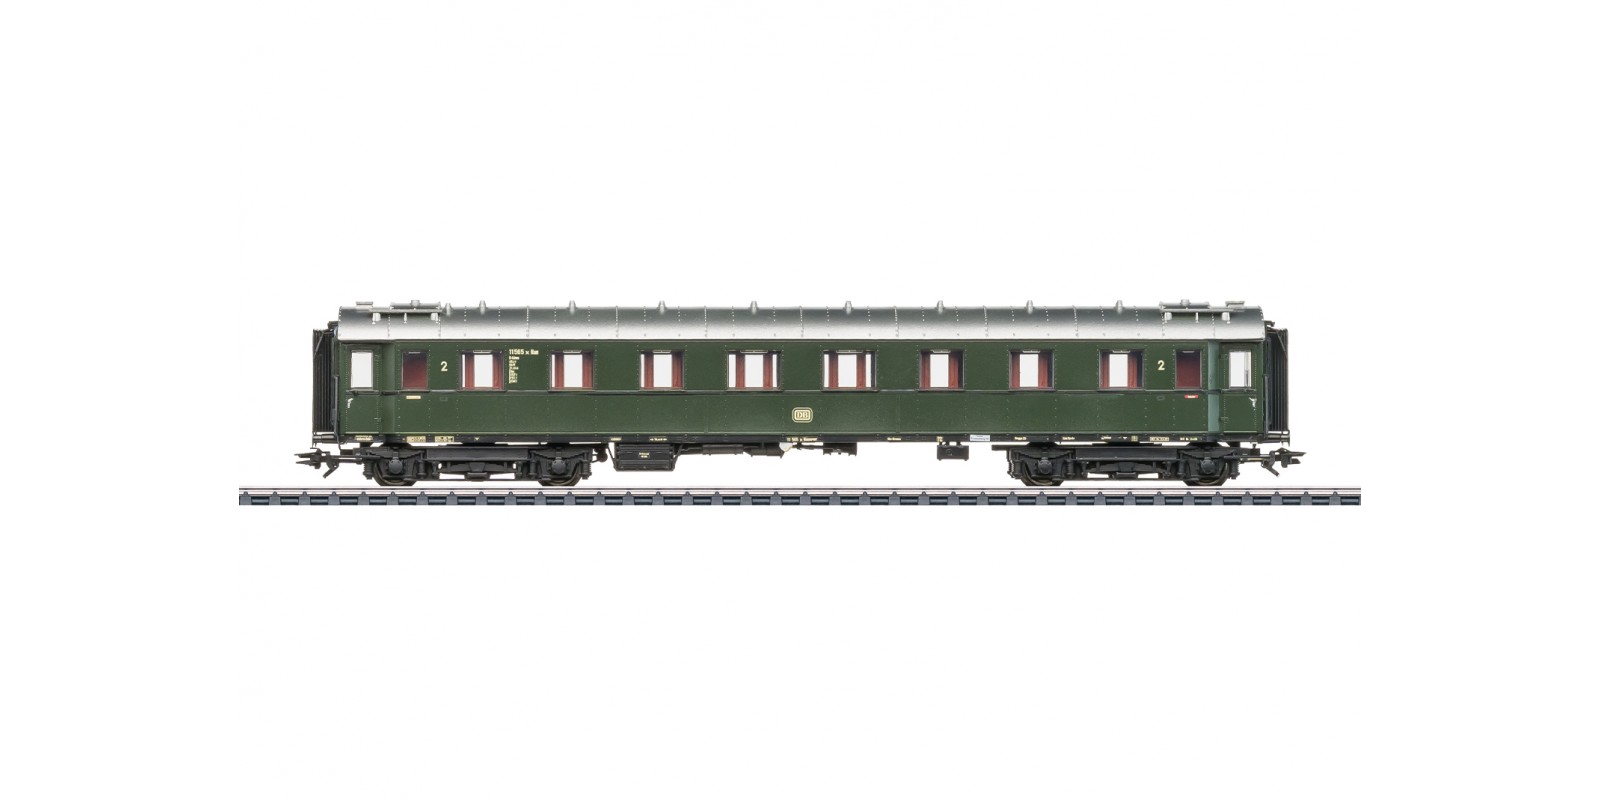 42500 Type B4üwe Express Train Passenger Car, 2nd Class